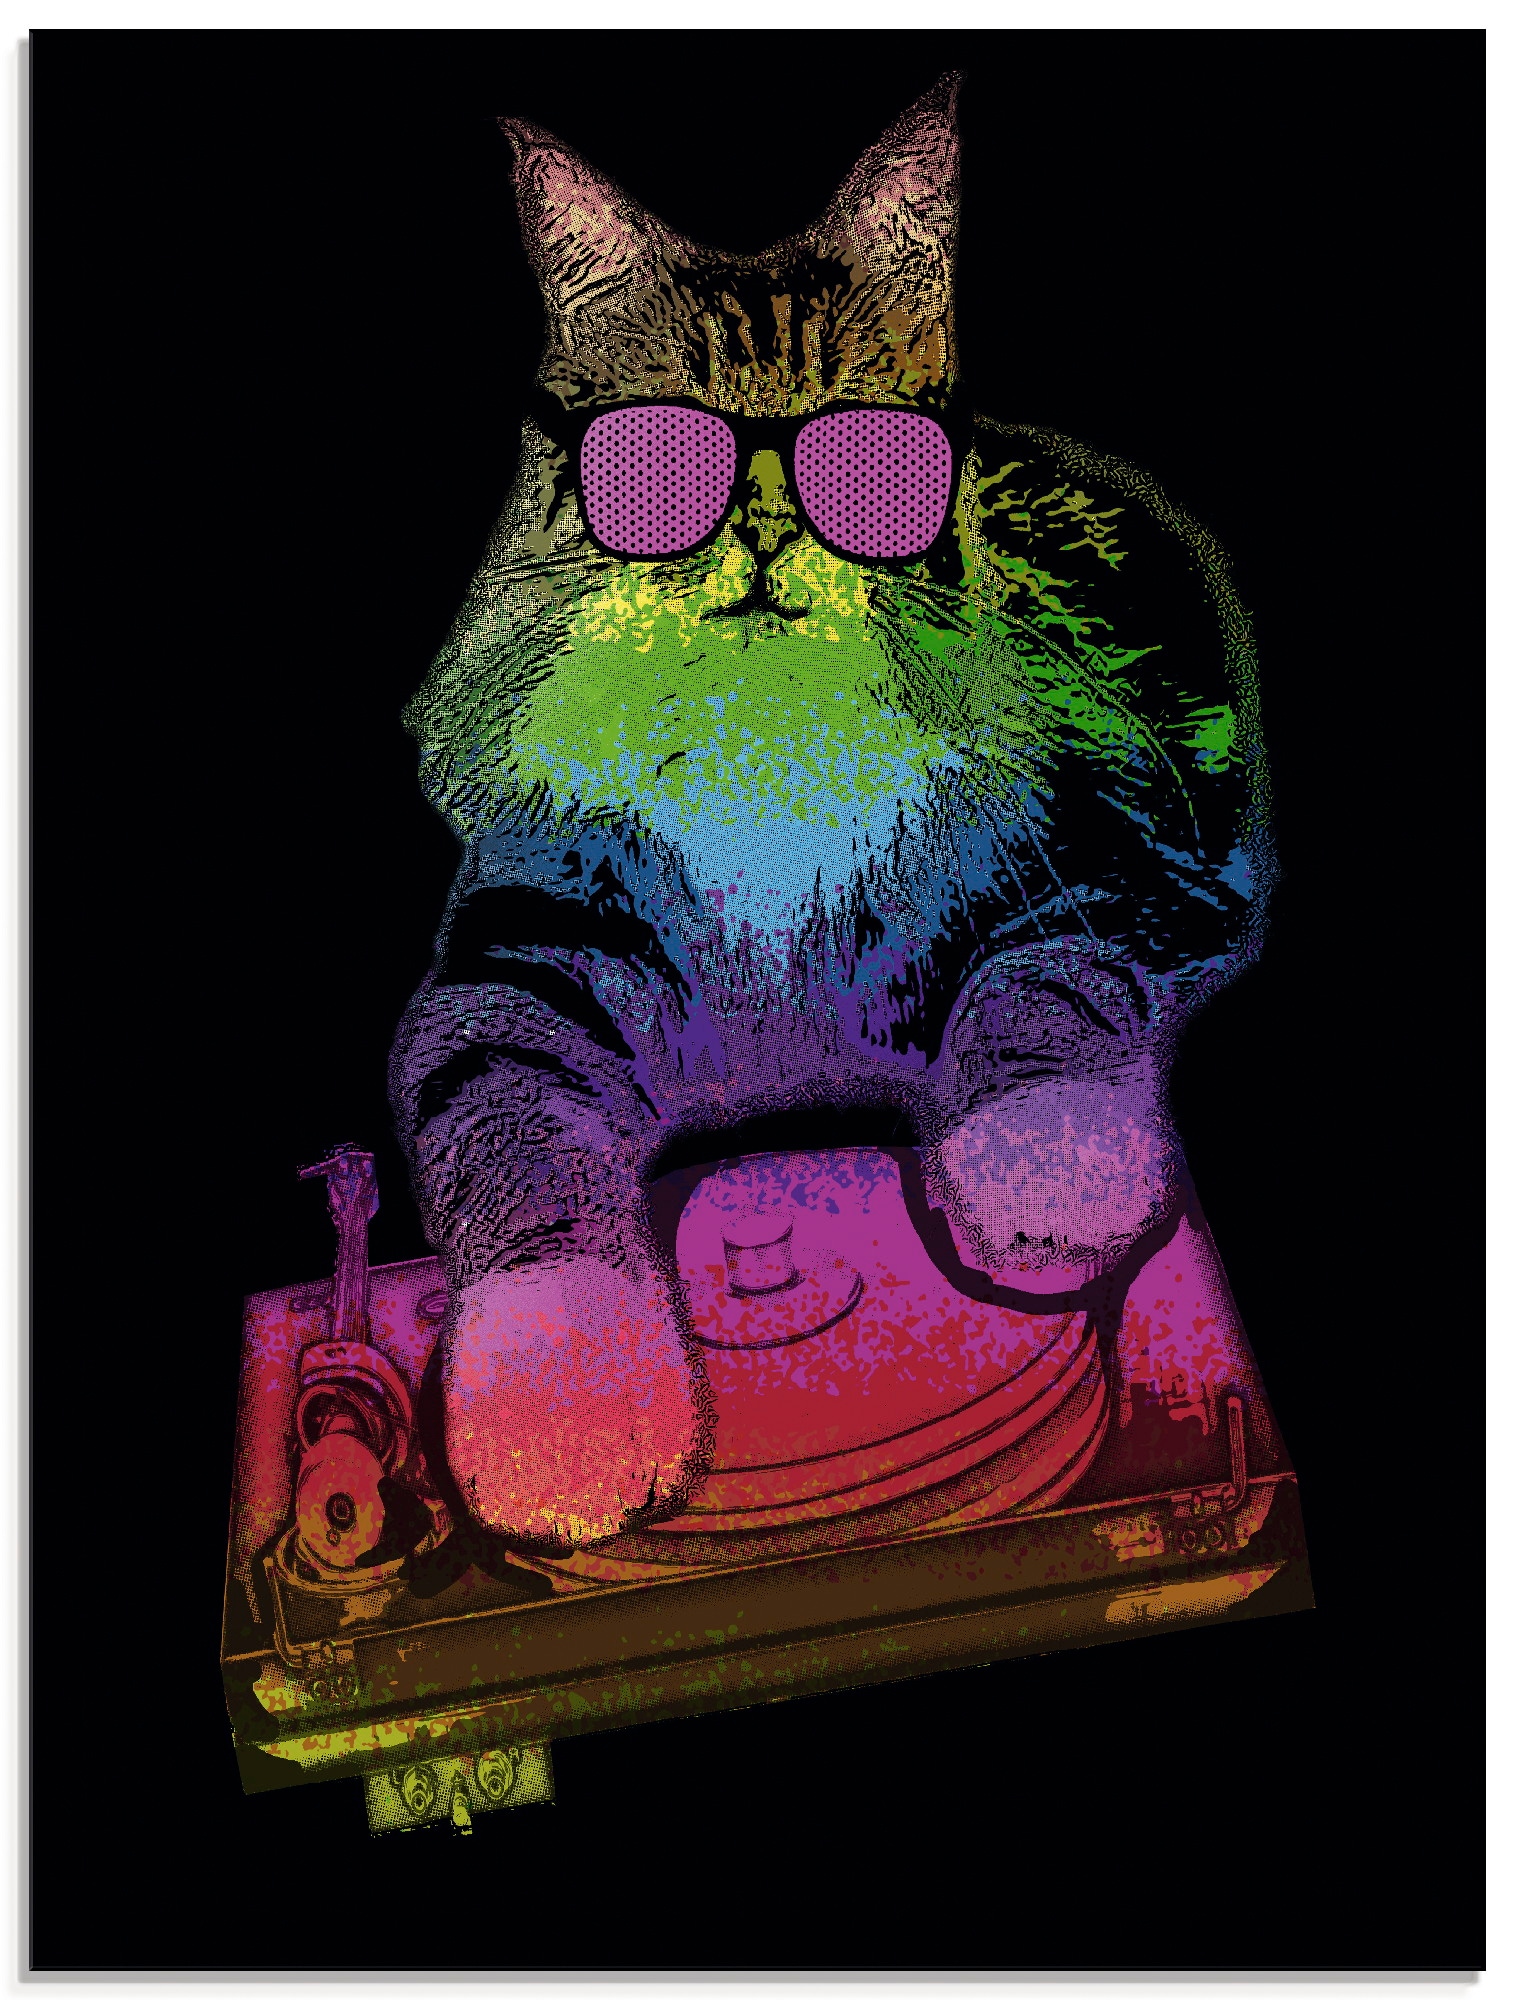 Artland Glasbild »Witzige DJ Katze Party Musik«, Humor, (1 St.), in verschiedenen Größen